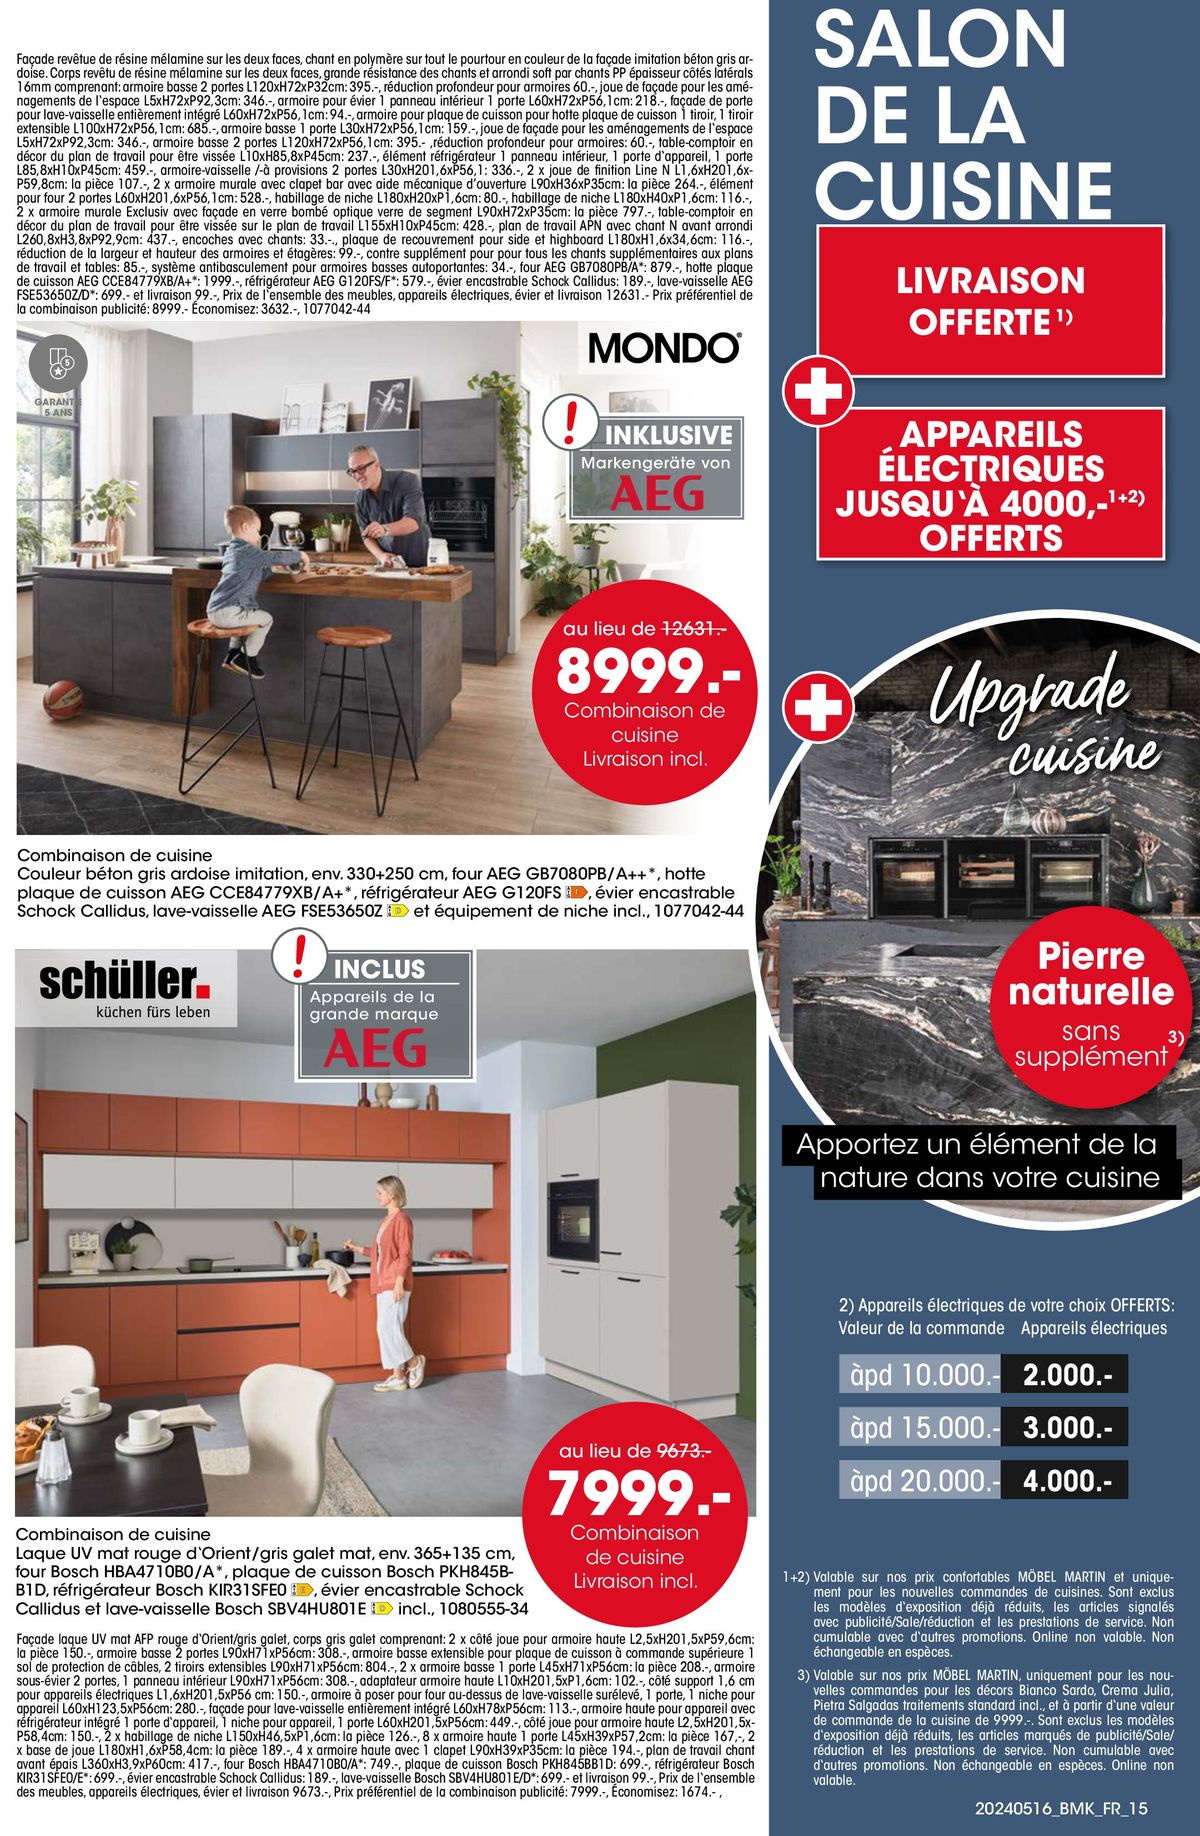 Catalogue Votre nouveau chez-vous avec GARANTIE-MEILLEUR PRIX, page 00015